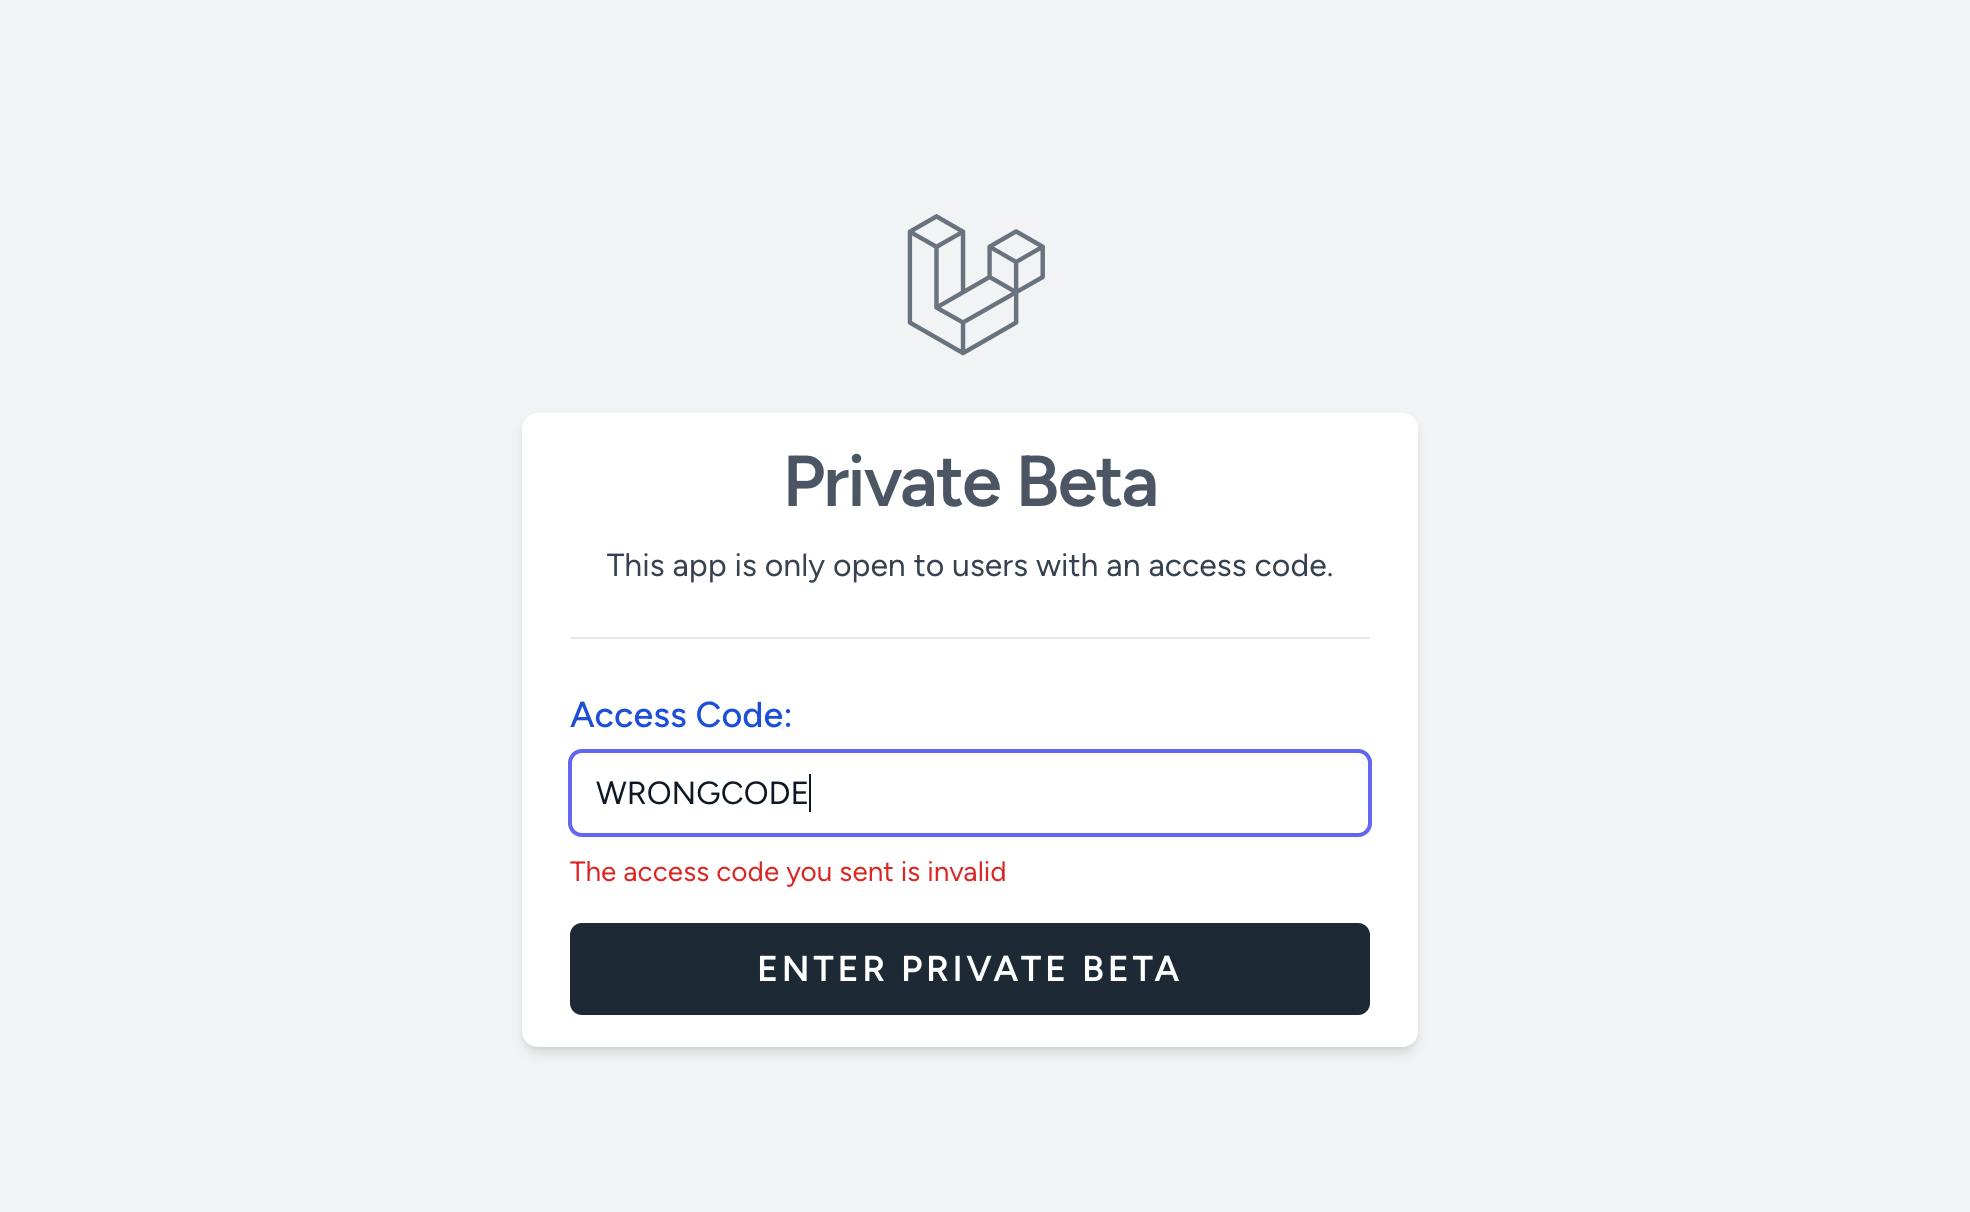 Test: Put a wrong Access Code